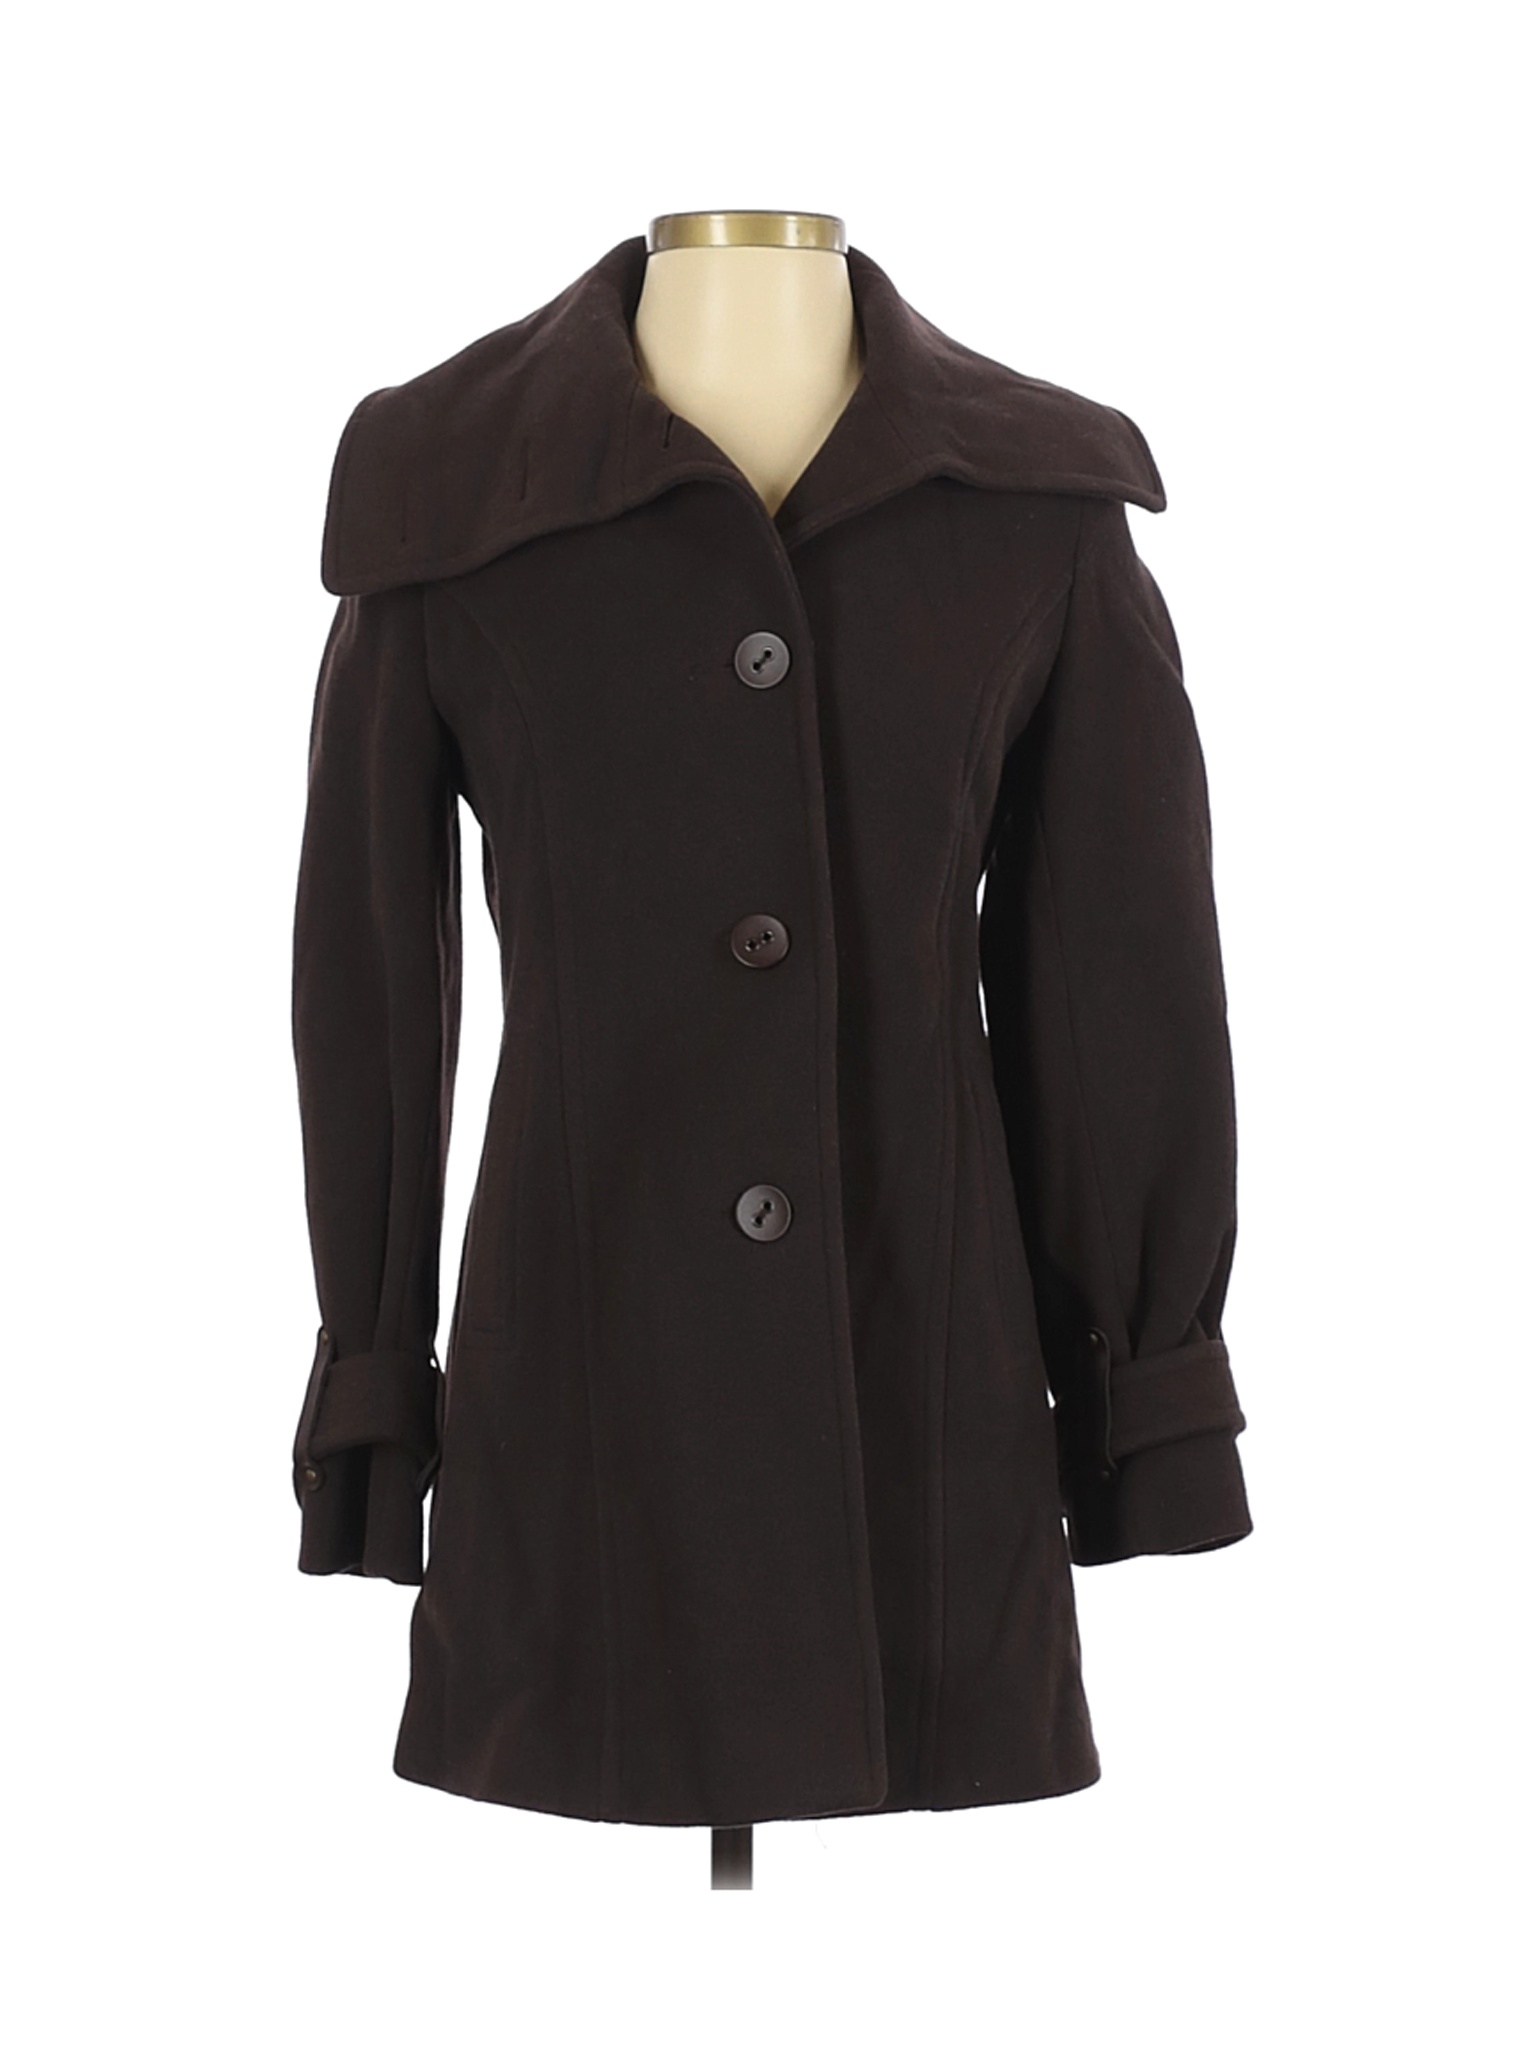 Nine West Women Black Wool Coat 2 | eBay